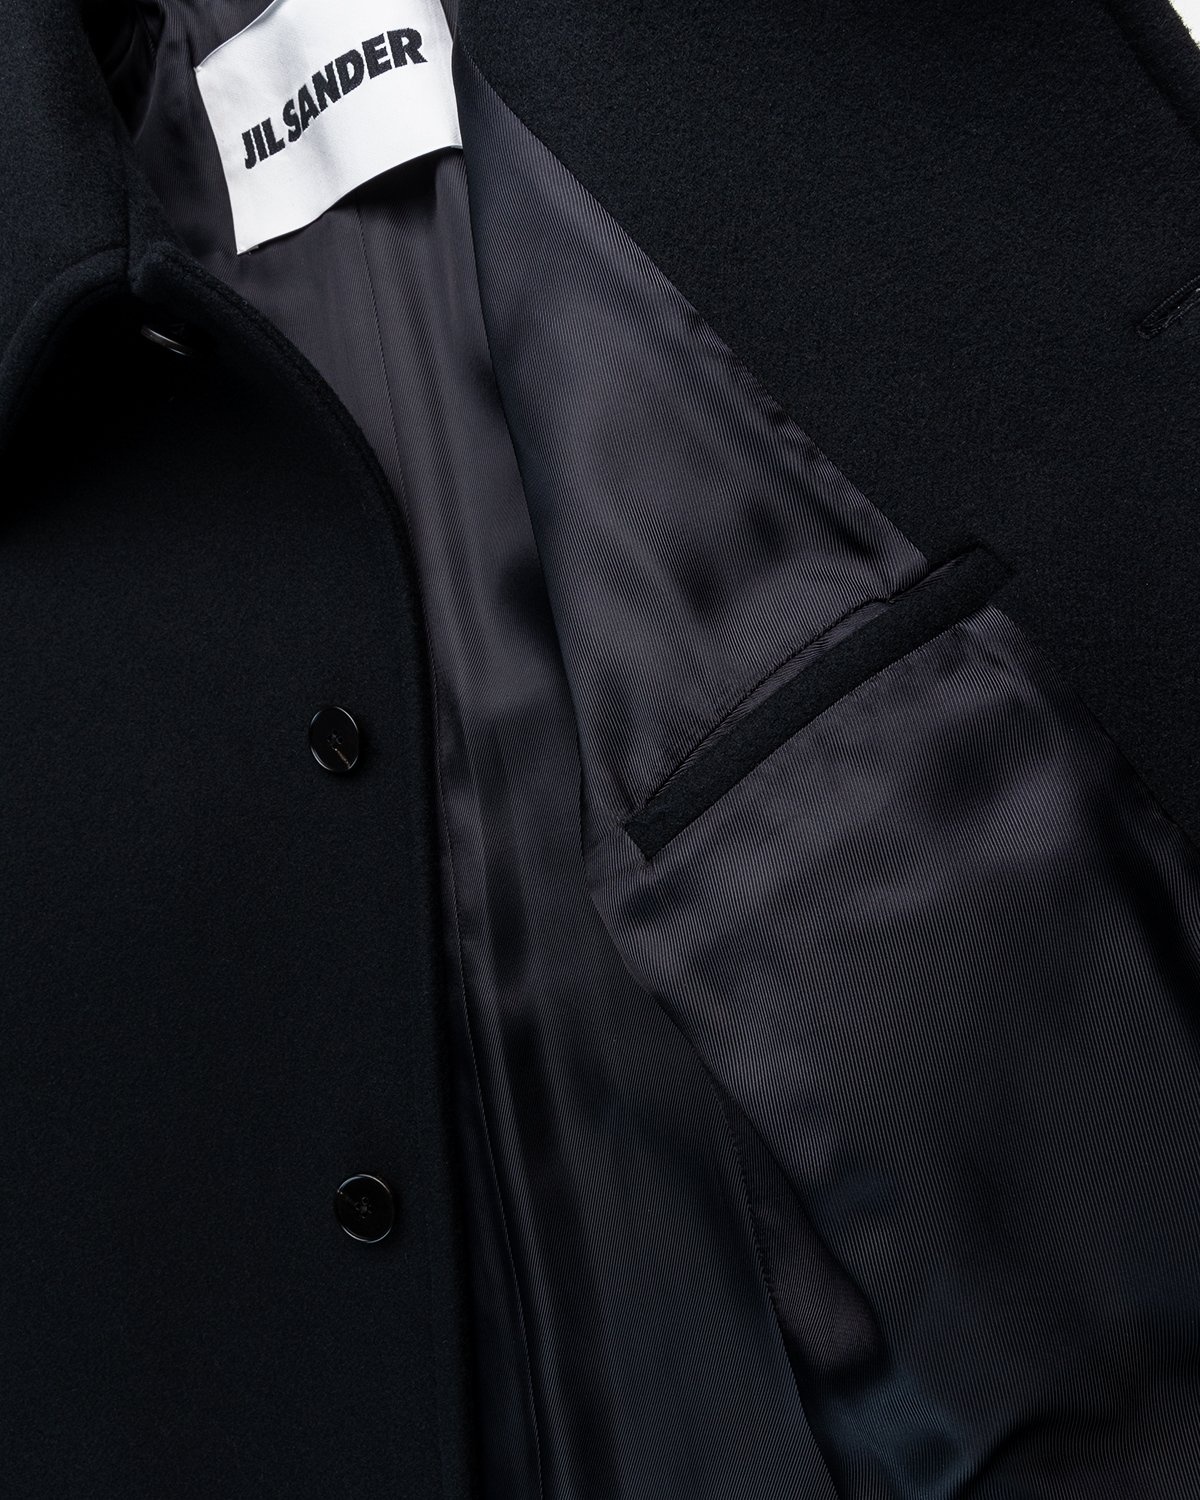 Jil Sander – Coat Black - Outerwear - Black - Image 4